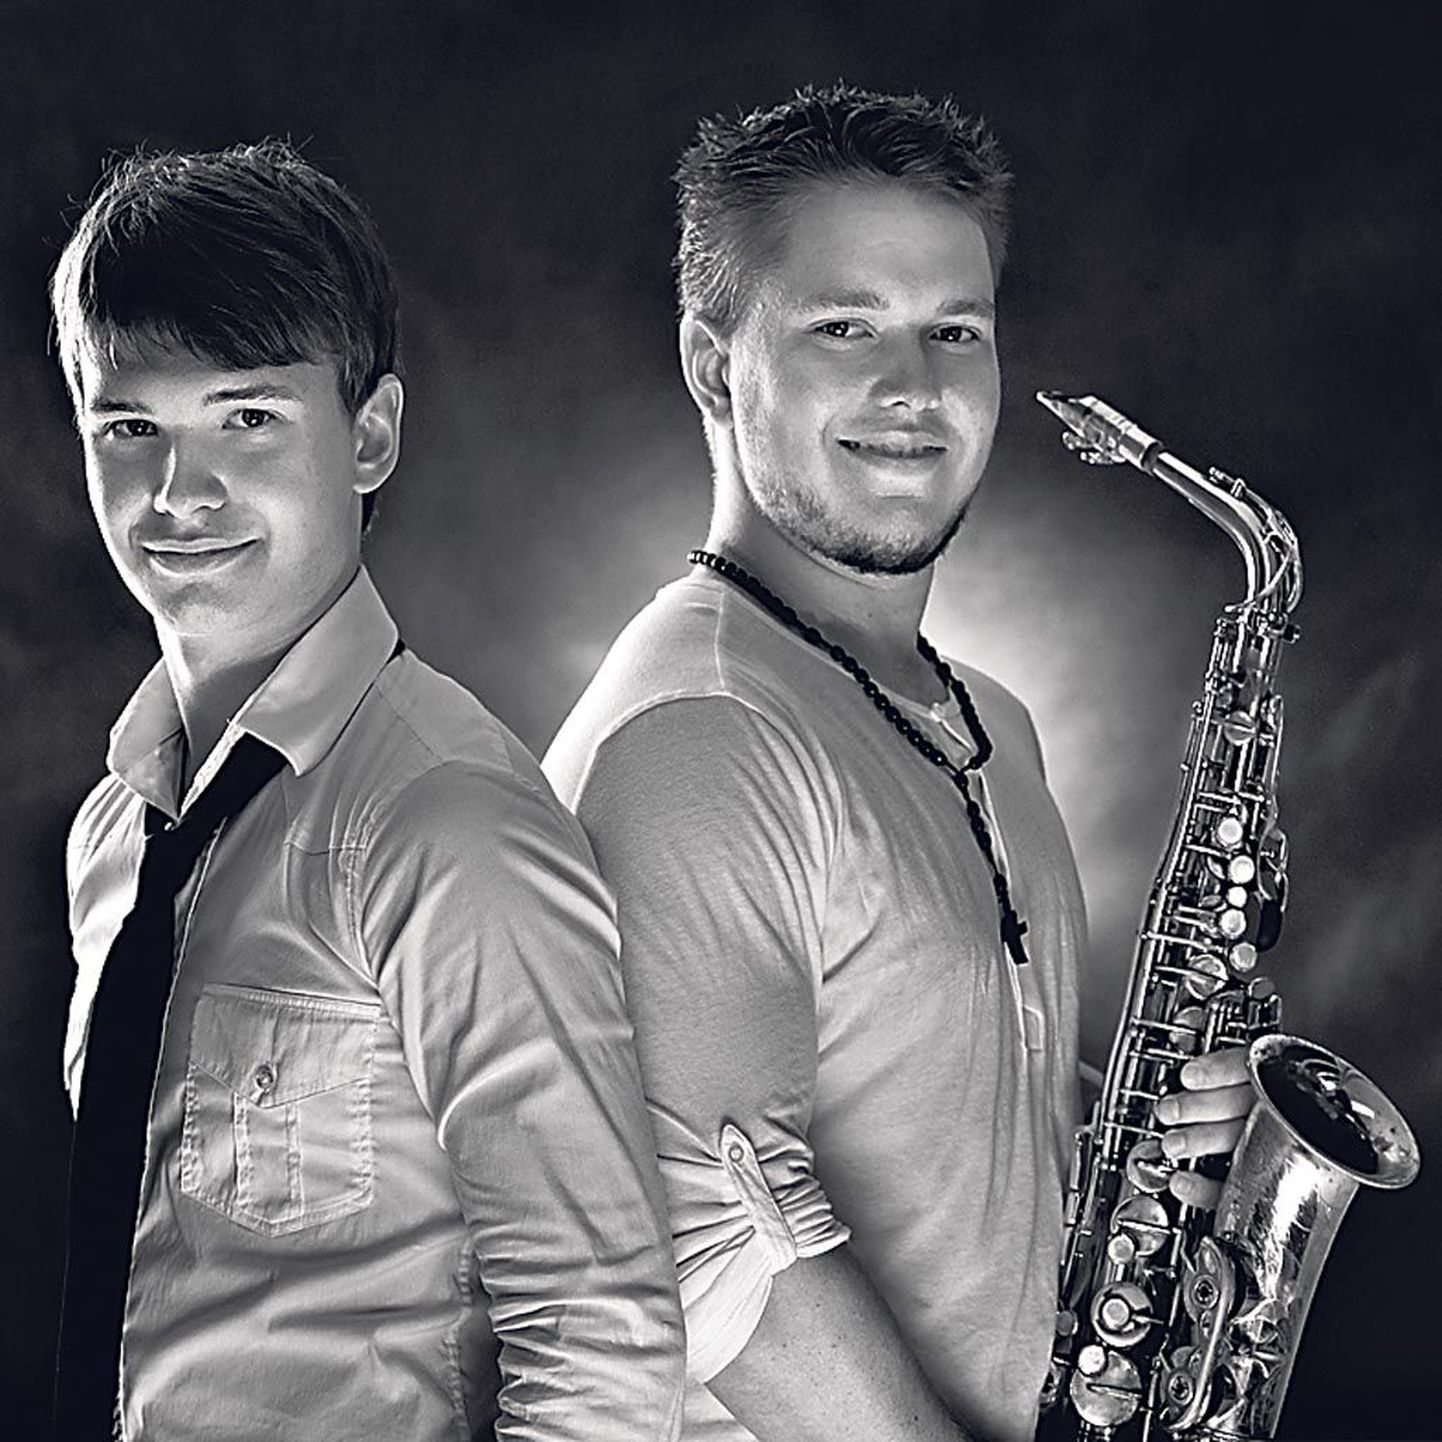 Holger ja Mairo Marjamaa veavad omanimelist bändi, millega loodetakse pakkuda elamusi publikulegi.